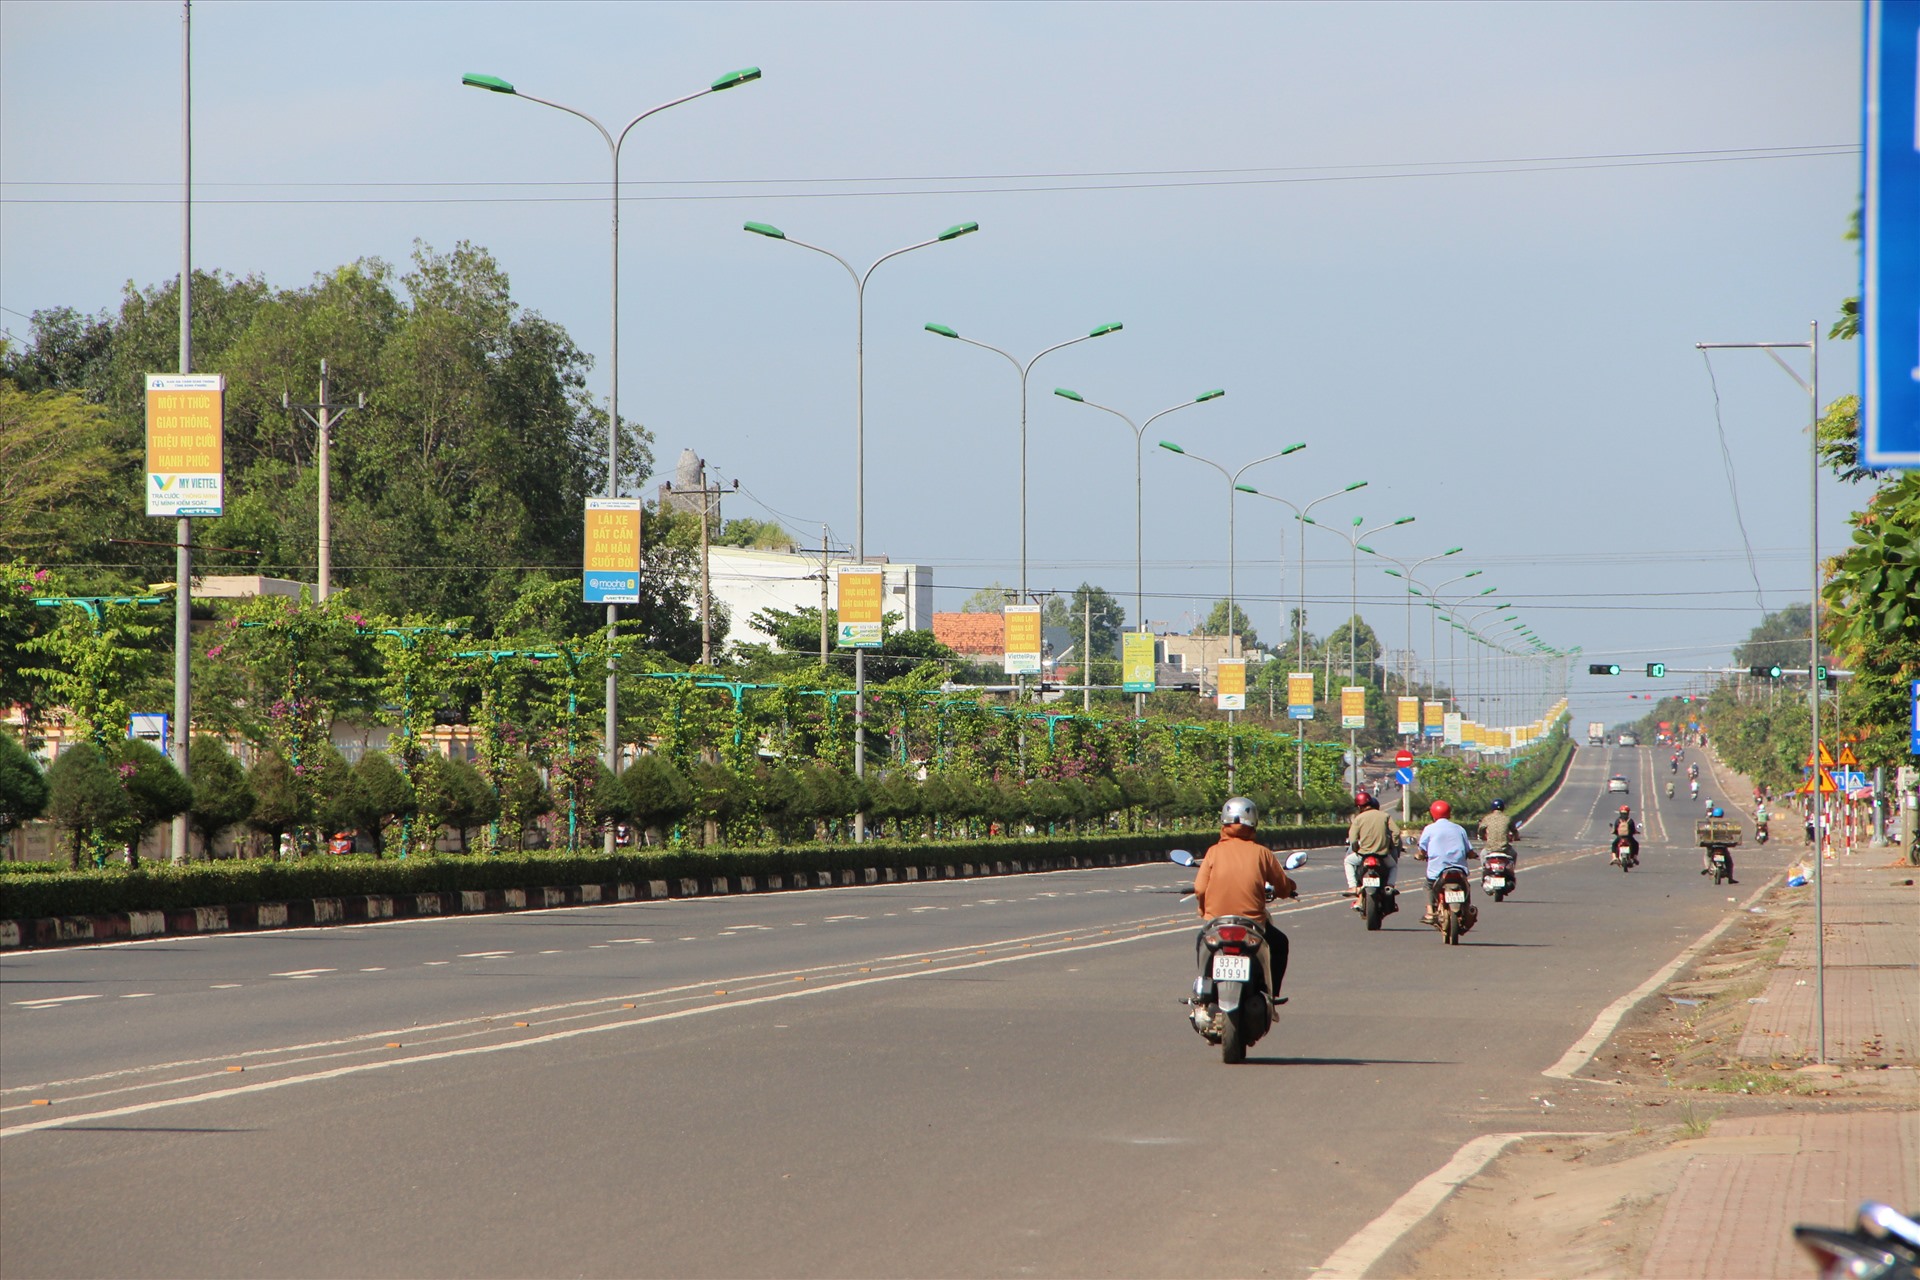  Thủ tướng Chính phủ đã giao UBND tỉnh Bình Phước là cơ quan có thẩm quyền triển khai dự án 